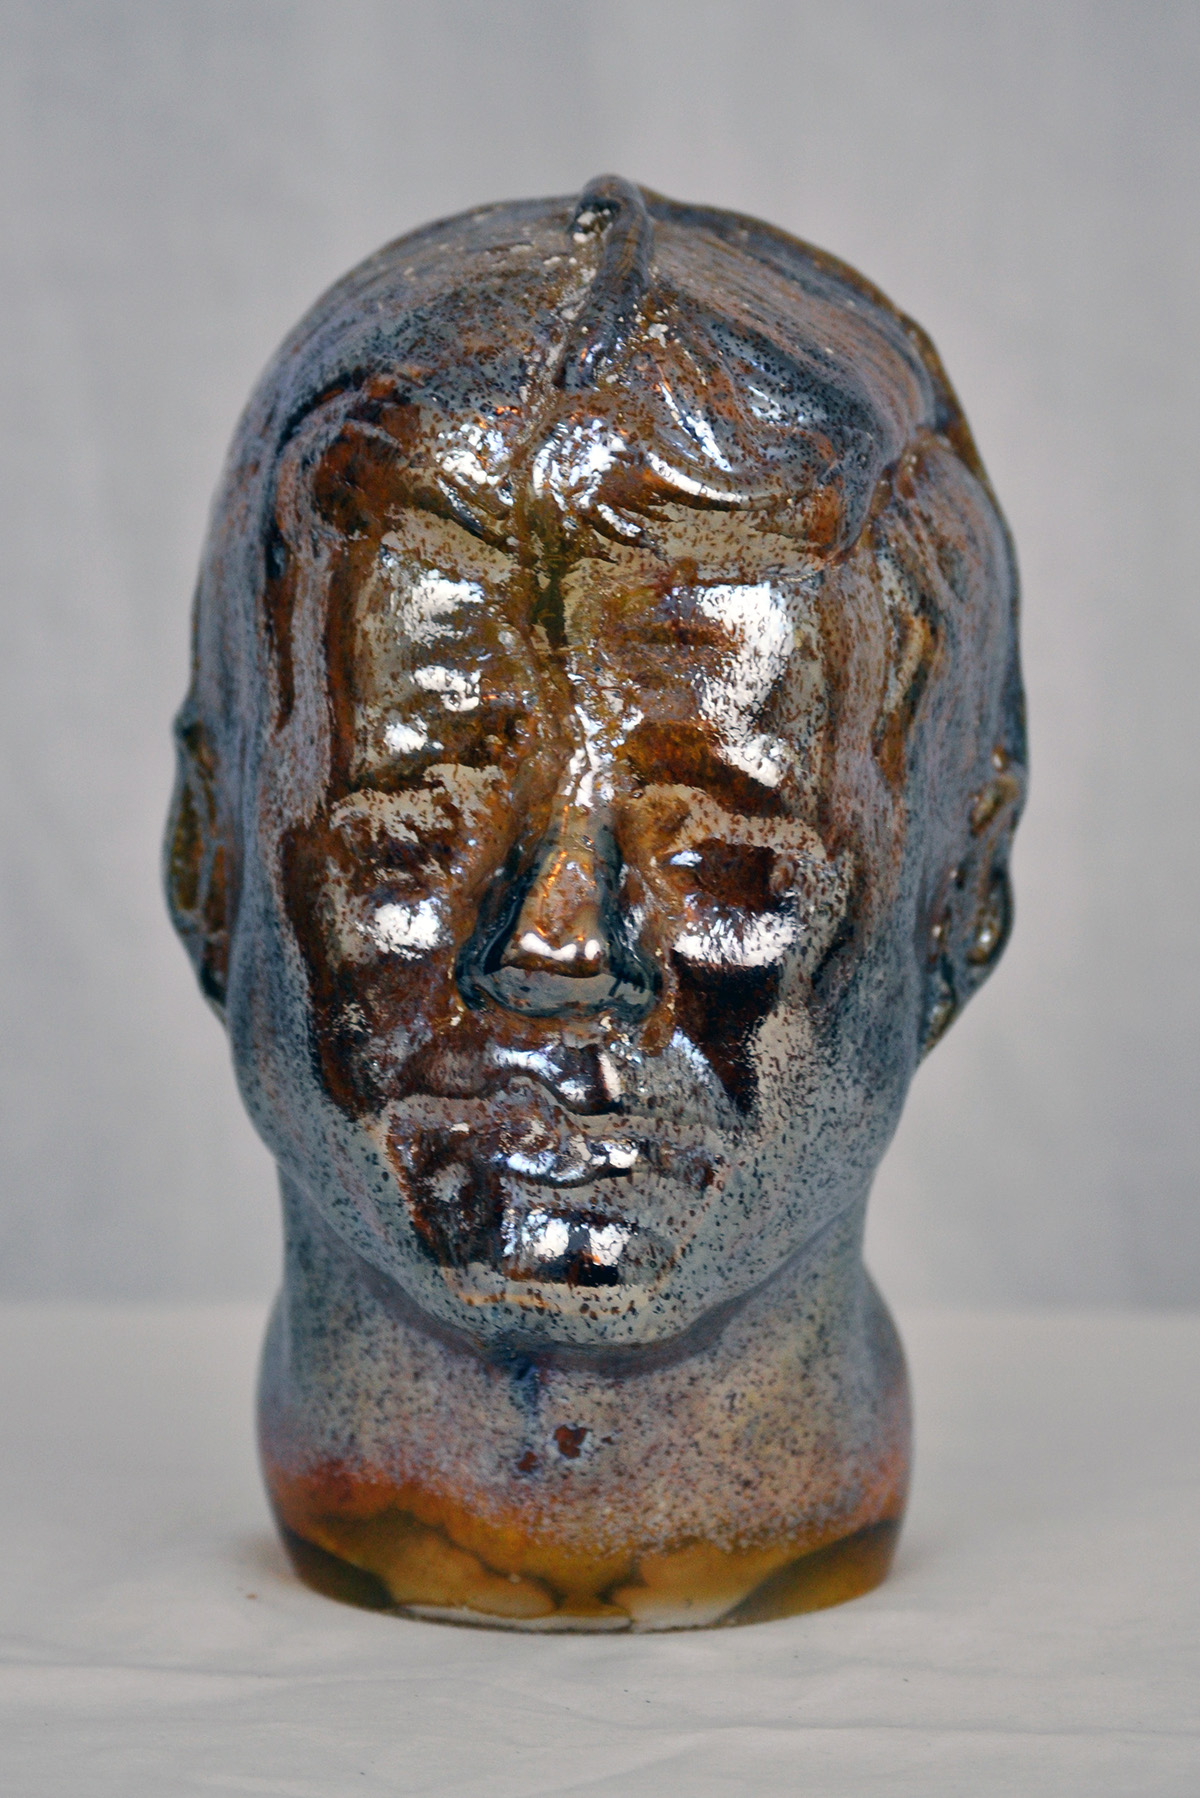 glass glassblowing hot glass kennedy President Kennedy JFK bust portrait figure face